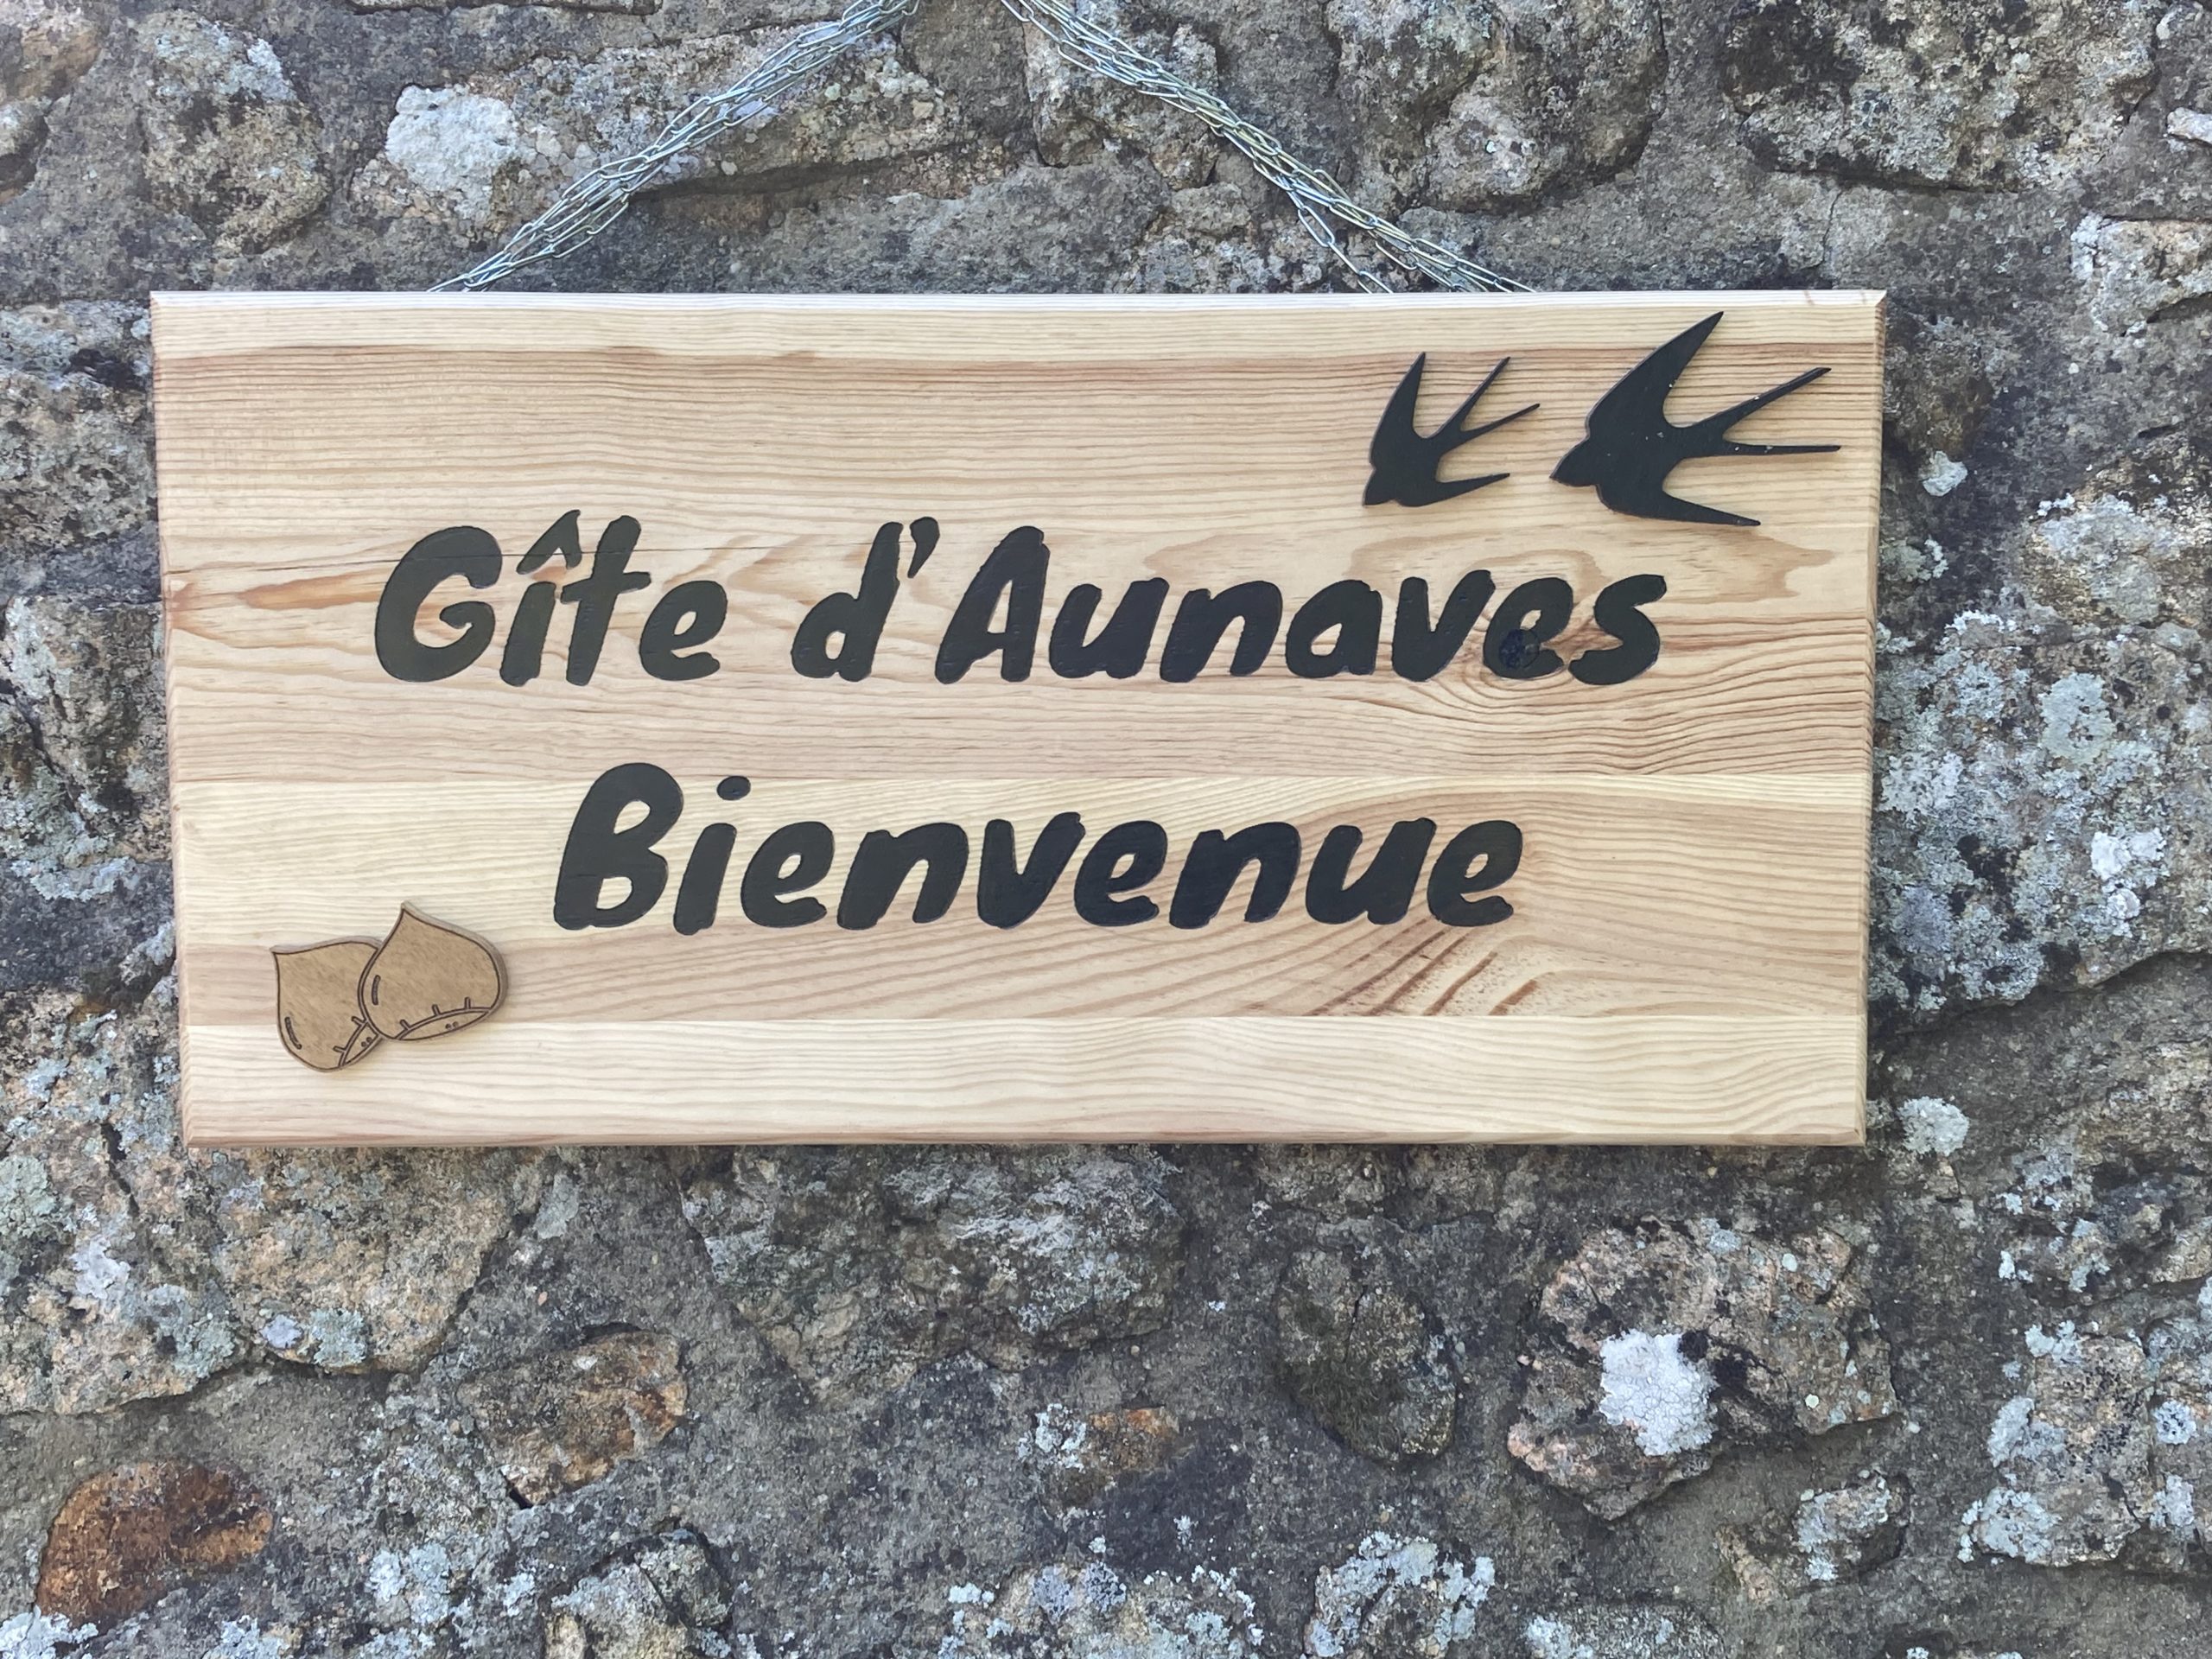 Aunaves gîte en pleine nature dans le Parc Naturel Régional des Monts d'Ardèche